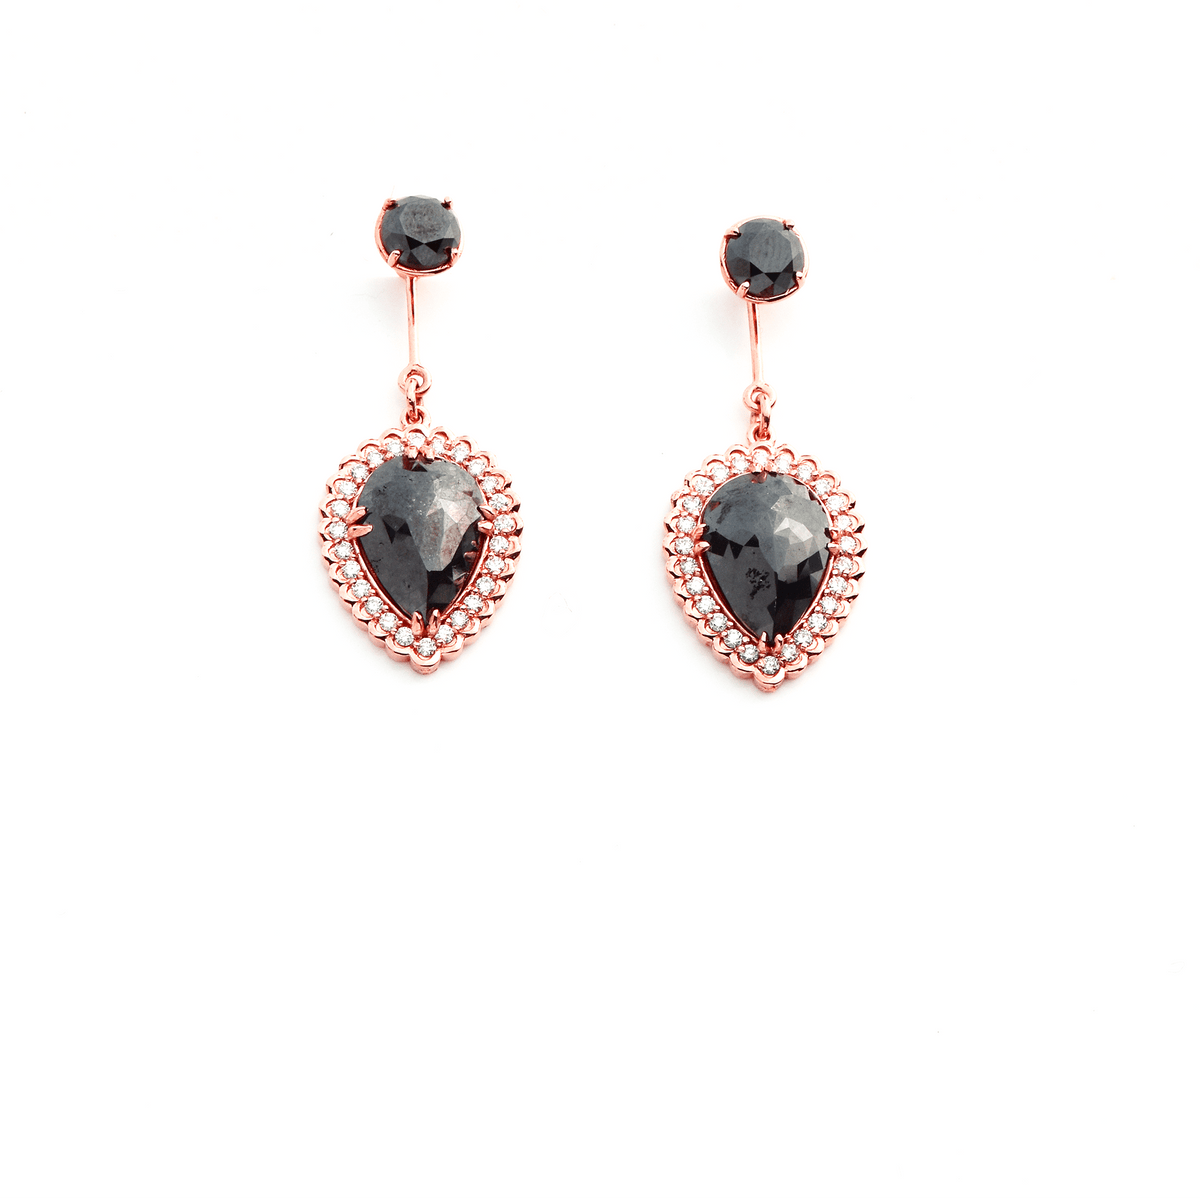 Everlasting Favor - Black and White Diamond Earrings